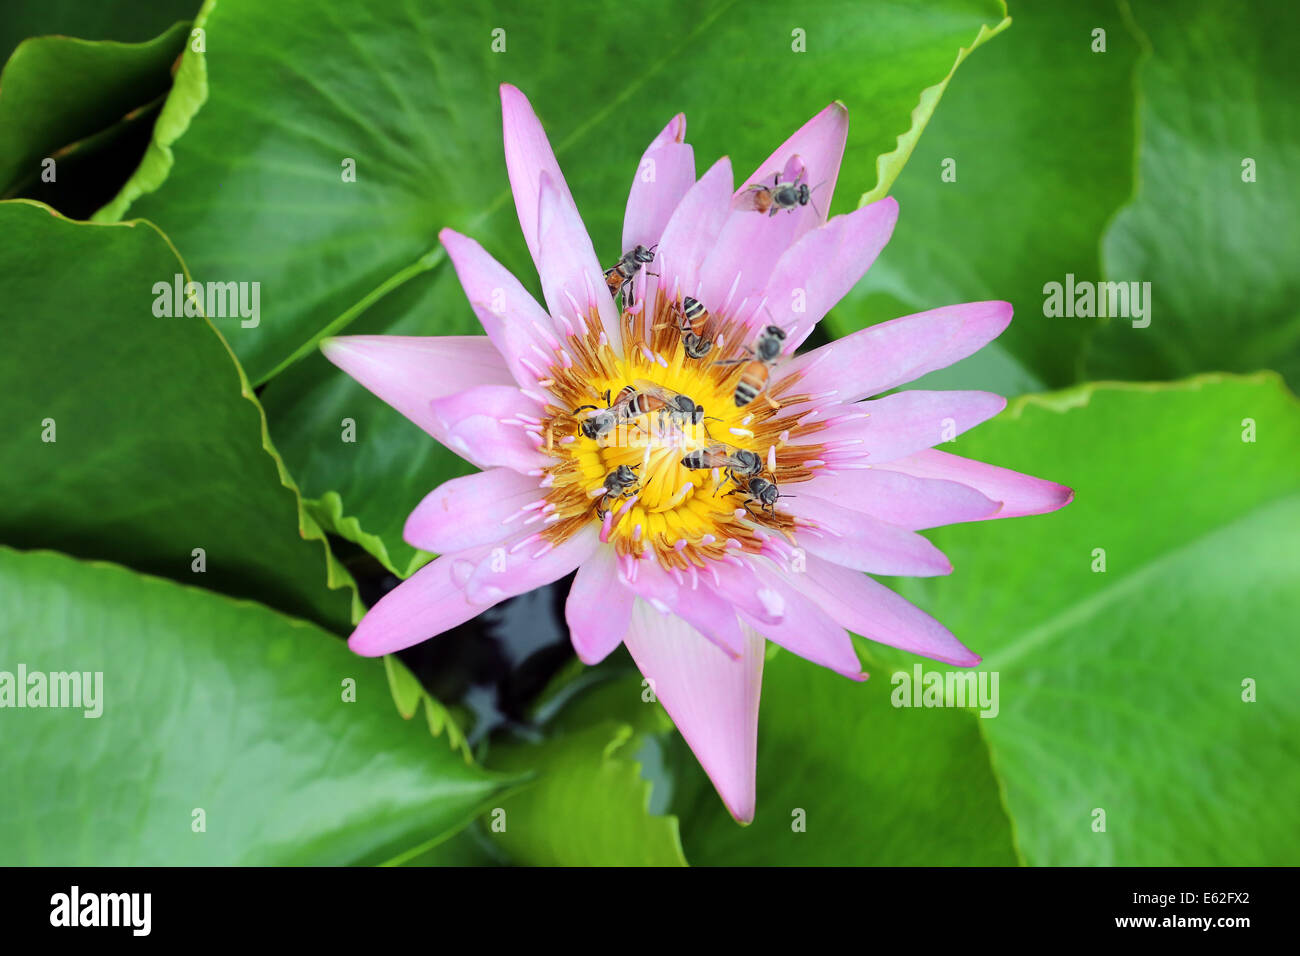 Los calentadores de agua de flor de Lilly atraído una legión de pequeñas abejas de miel de Asia, Tailandia Foto de stock